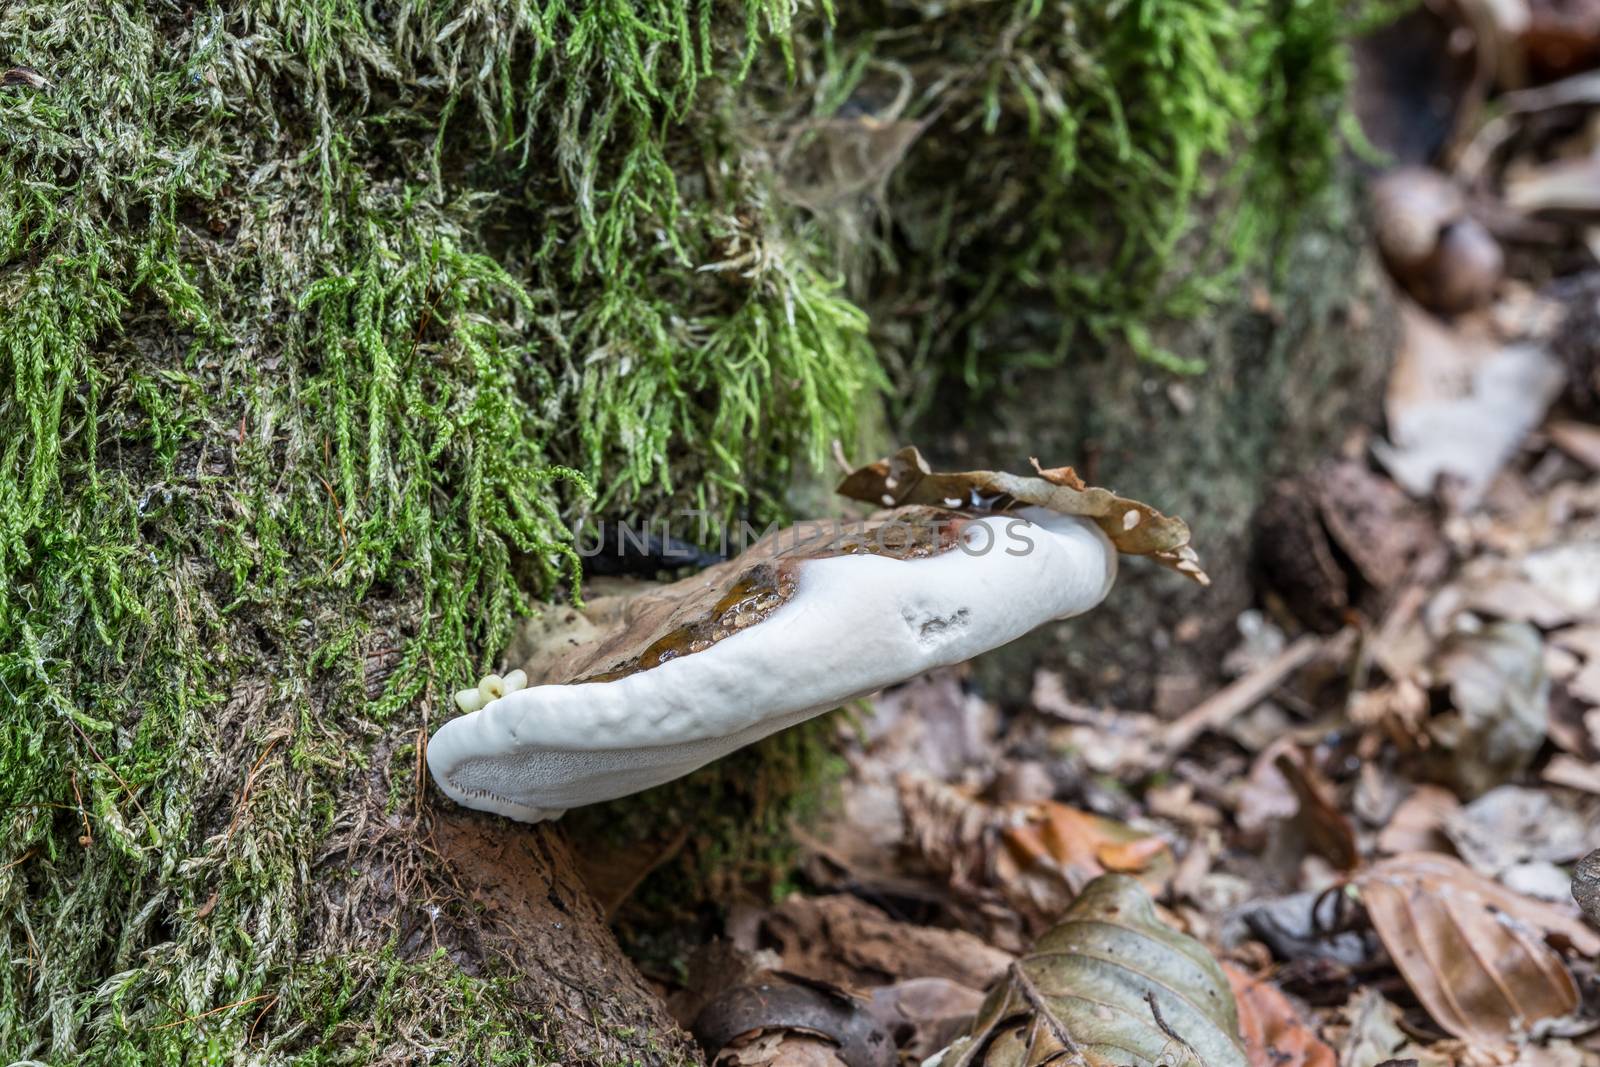 decomposed mushroom on dead tree trunk